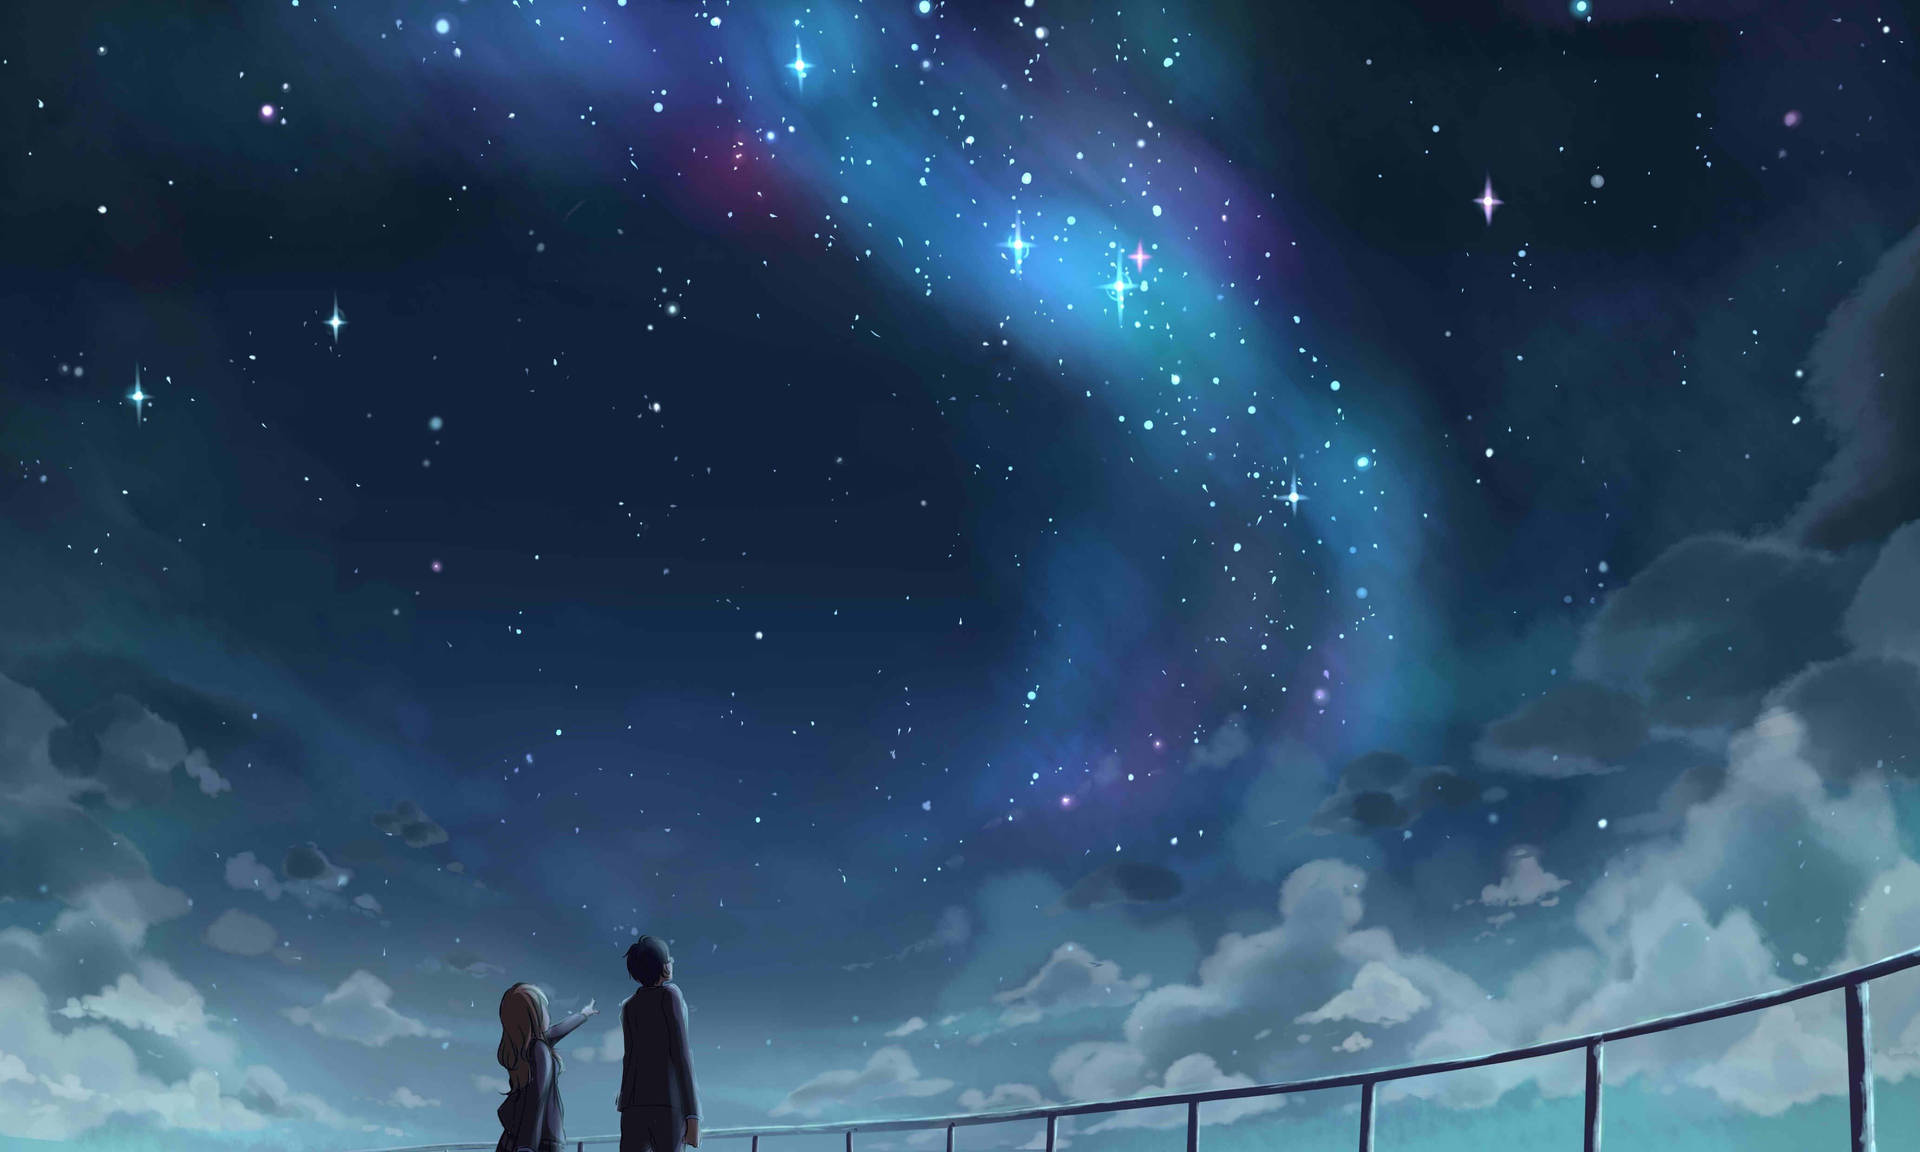 Anime Aesthetic Starry Sky Wallpaper